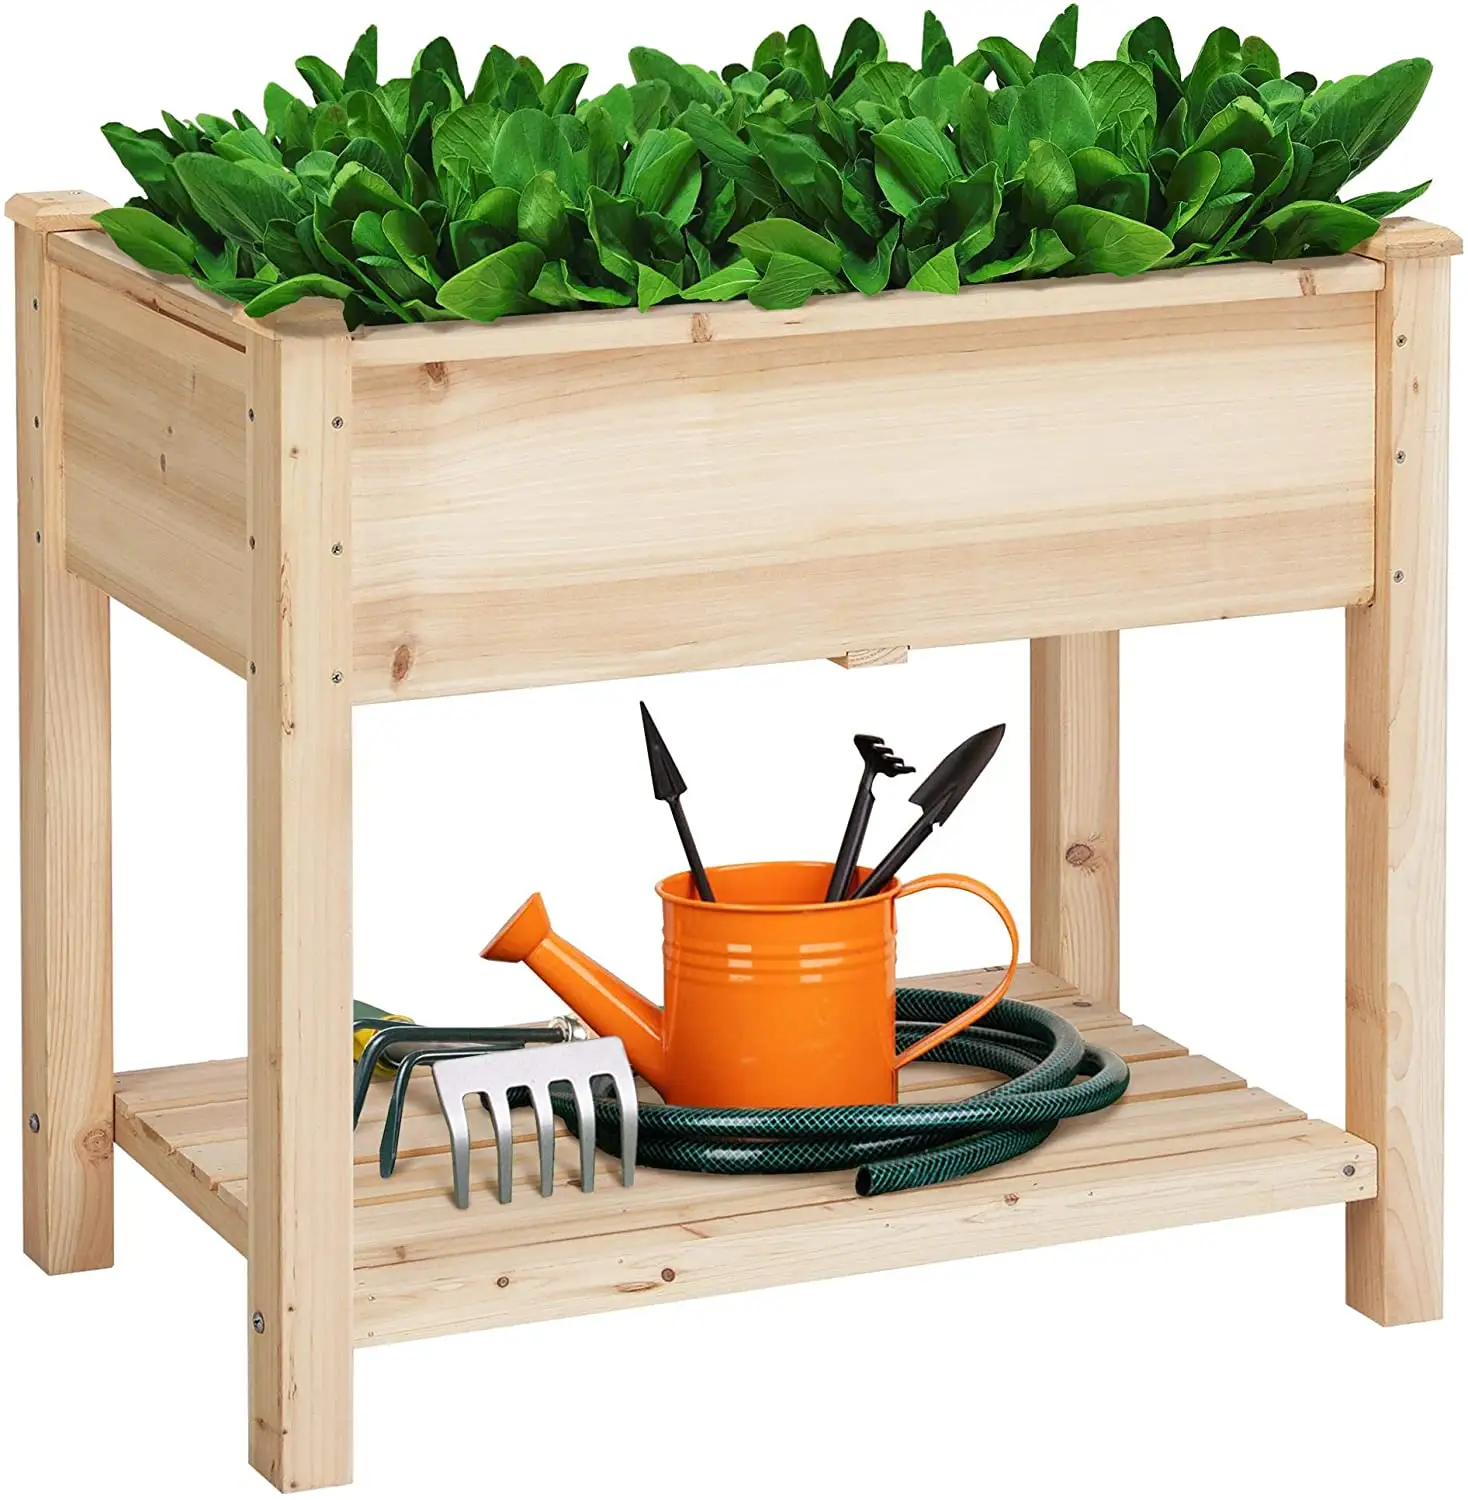 Lit de jardin surélevé en bois avec jambes, bacs à fleurs, boîtes de culture de légumes rehaussés avec étagère de rangement, Pot de plantes en bois